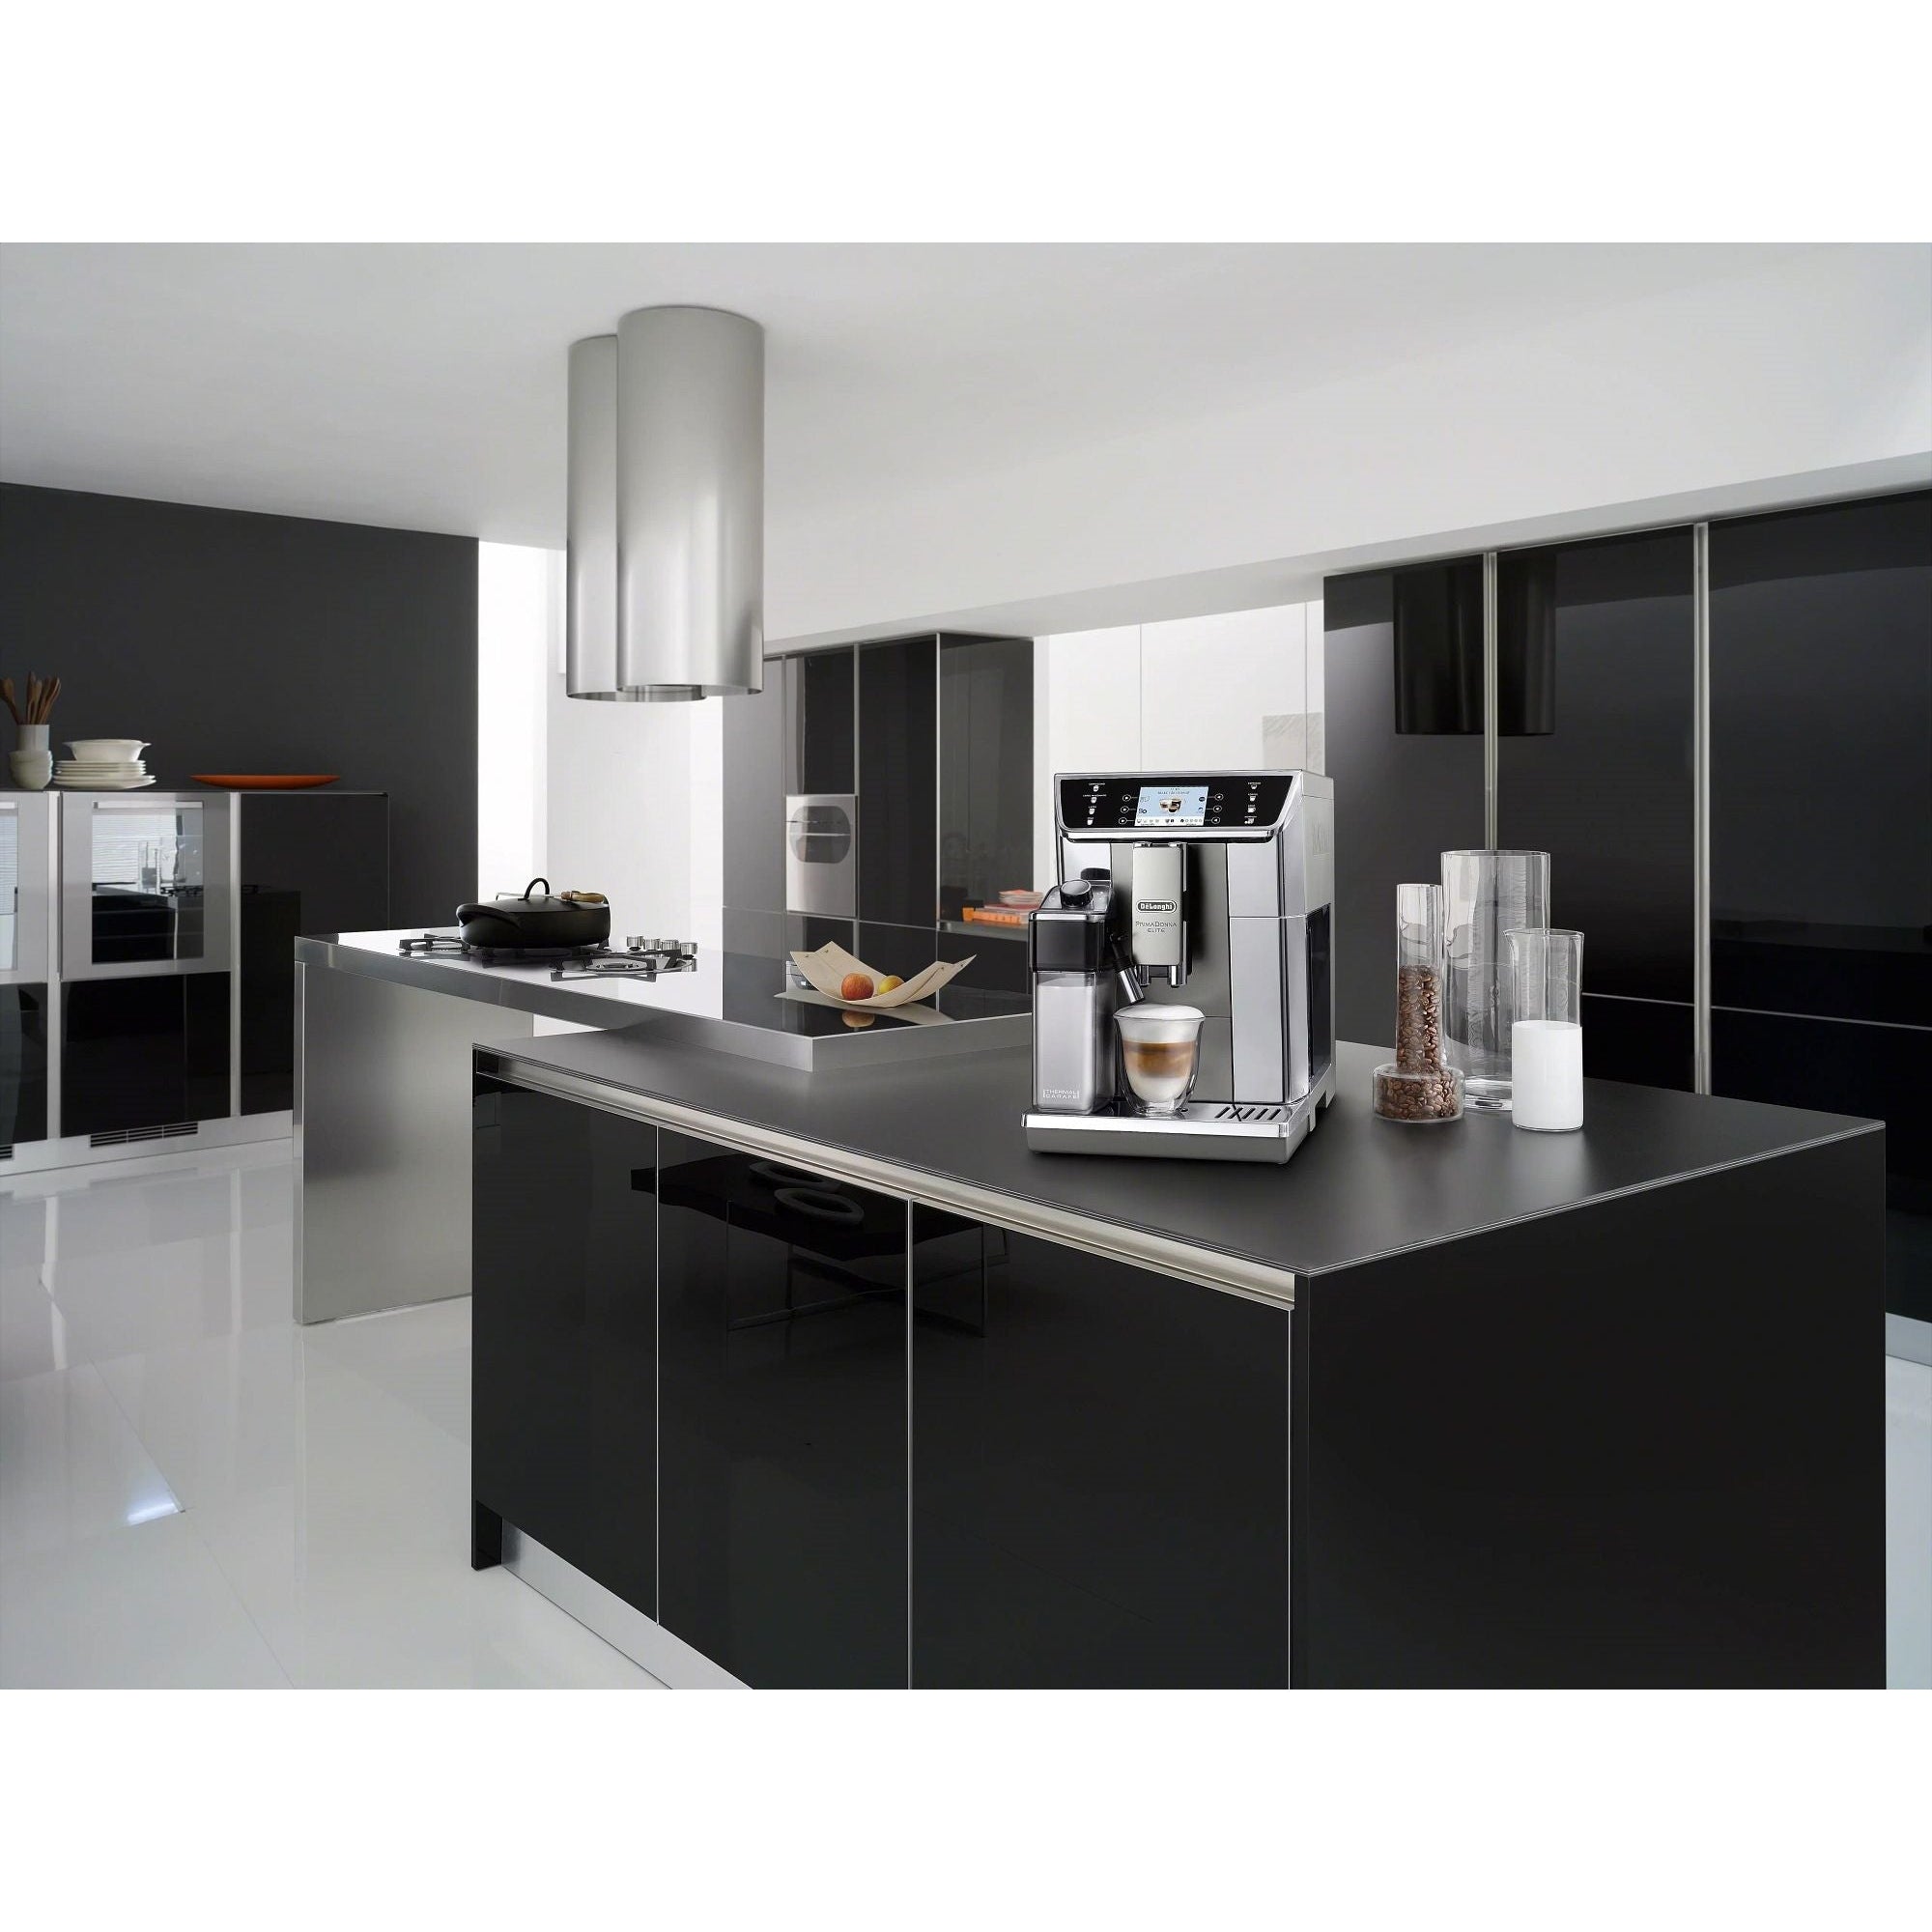 DeLonghi Prima Donna Elite Super Automatic Espresso Machine - ECAM65055MS Kitchen Display